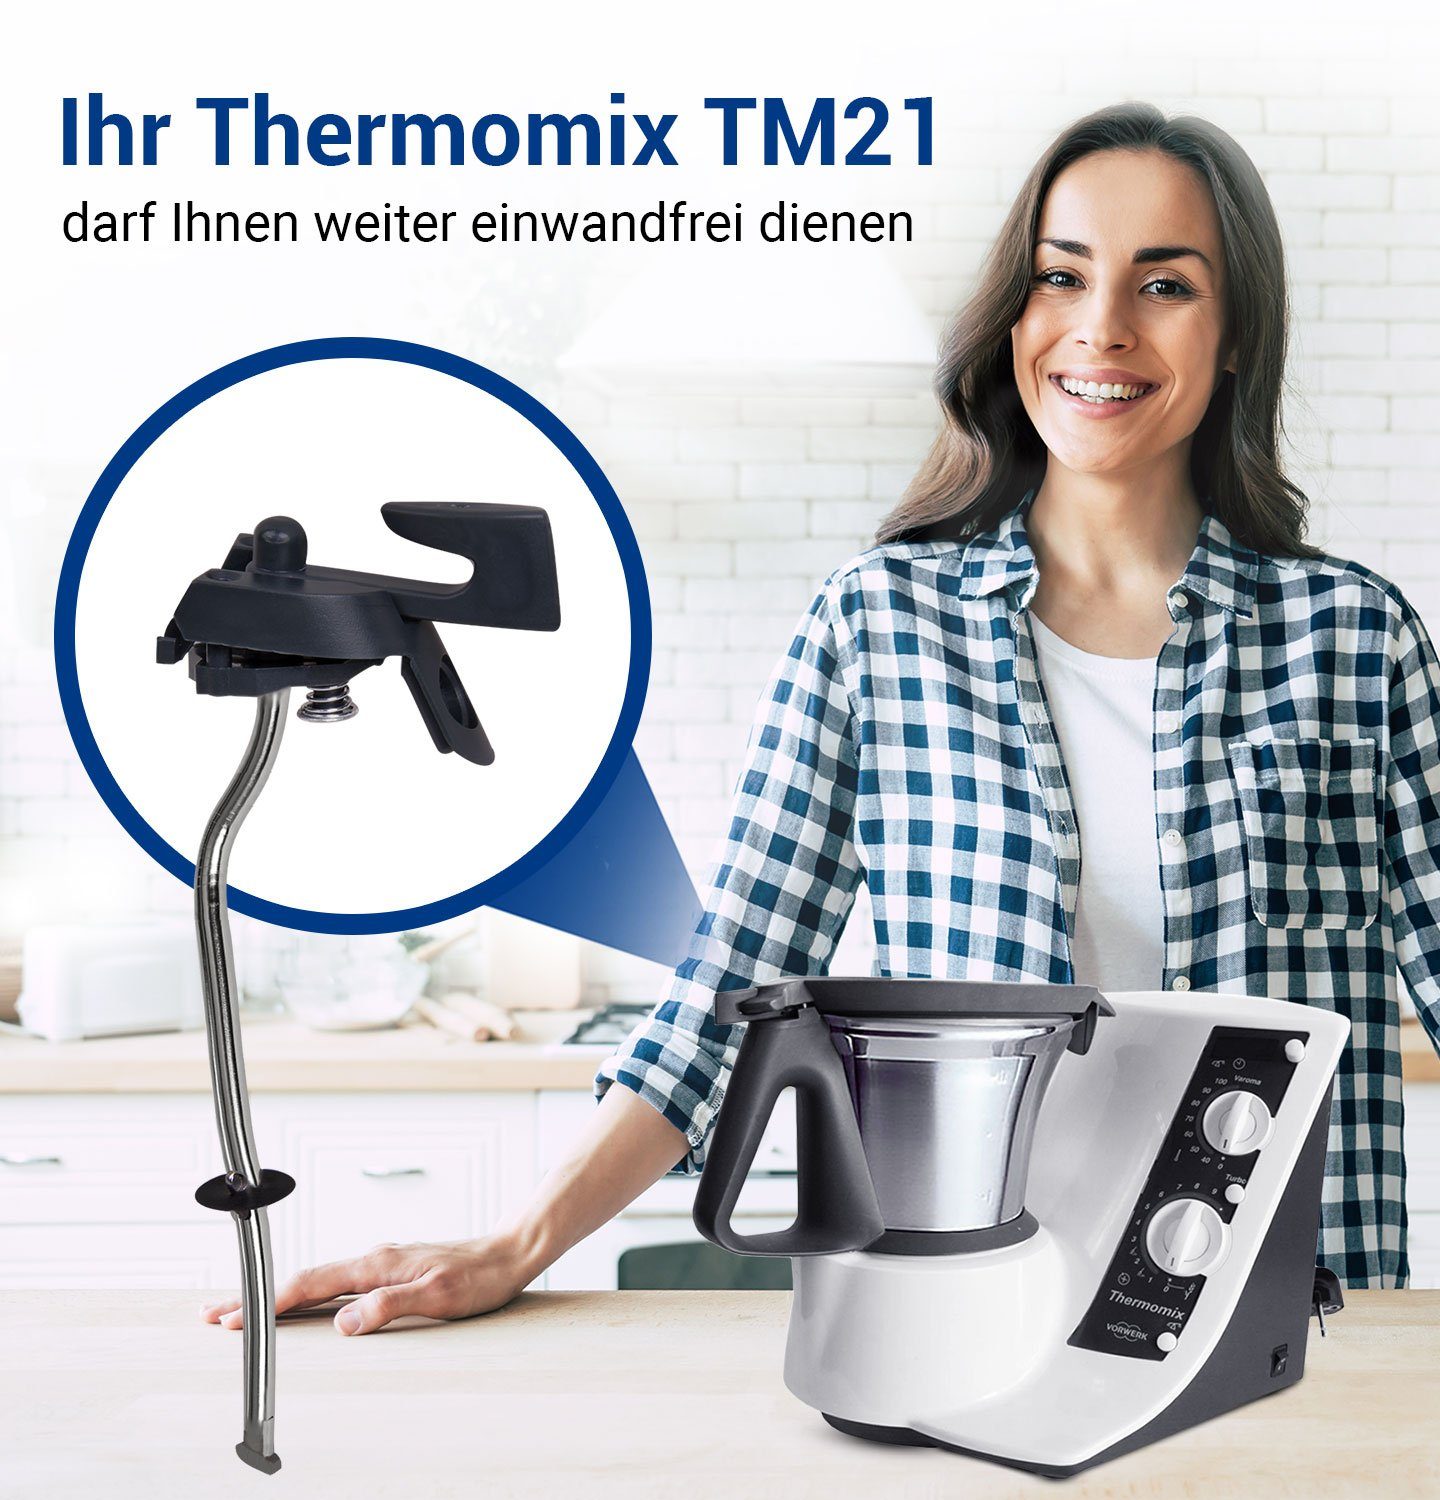 VIOKS Sicherungshalter Verriegelungshebel Ersatz TM21 Küchenmaschine Thermomix für Vorwerk, für